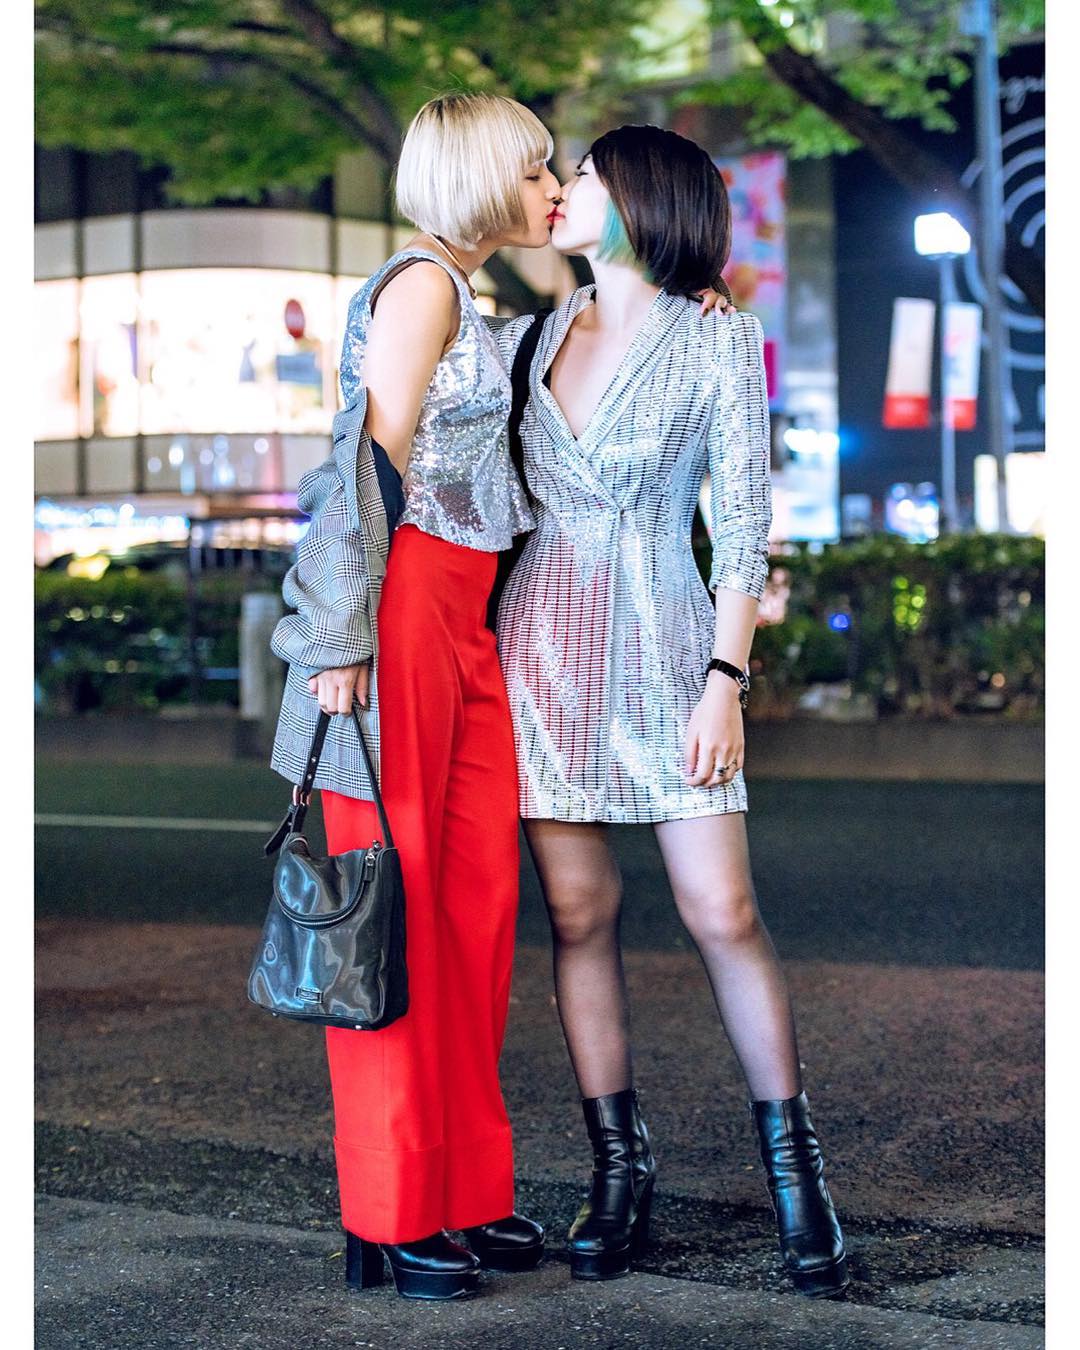 Japanese Lesbian Pic